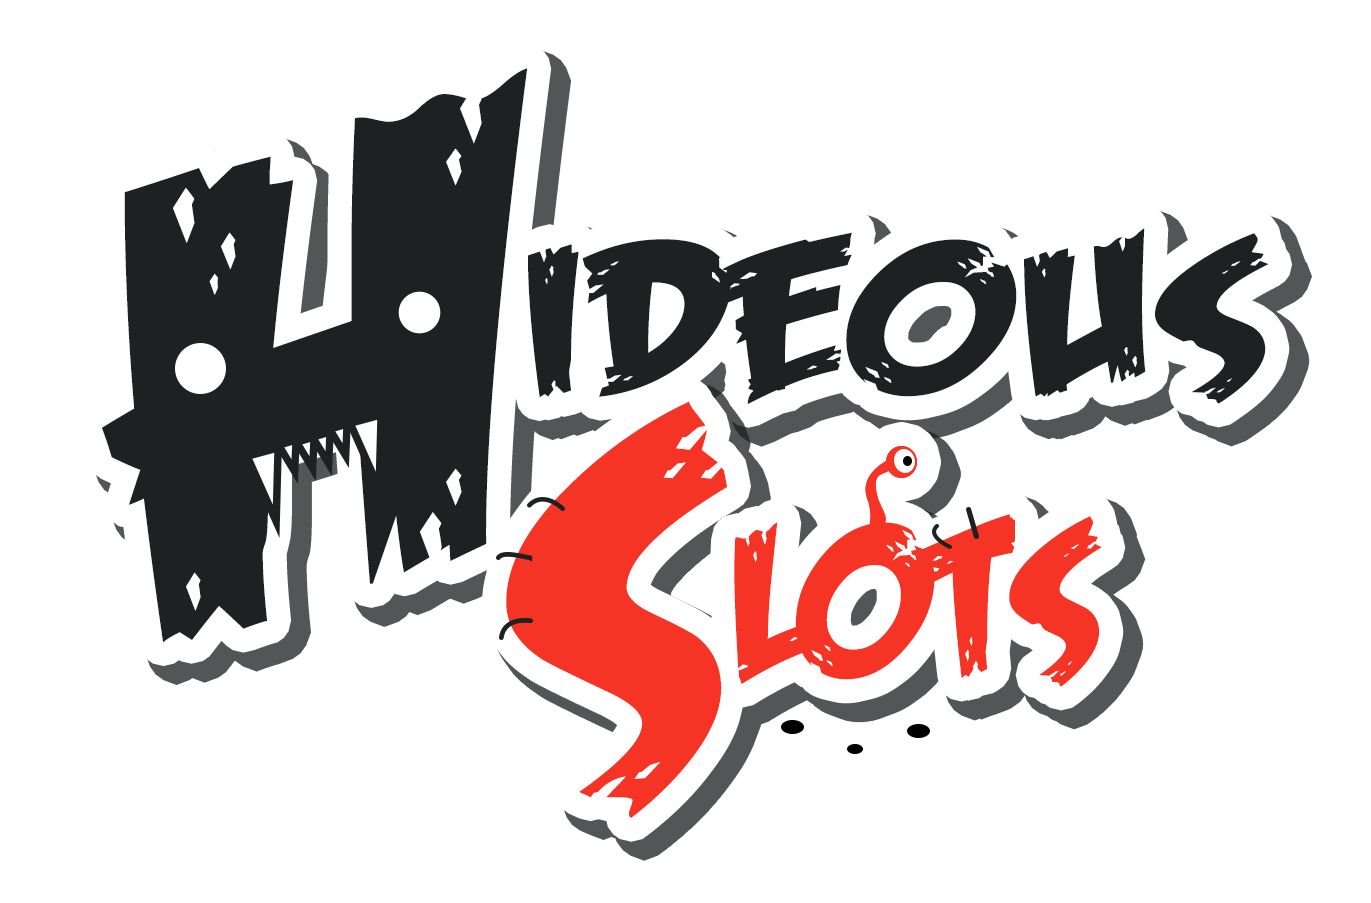 Hideous_Slots_logo_transparent.png